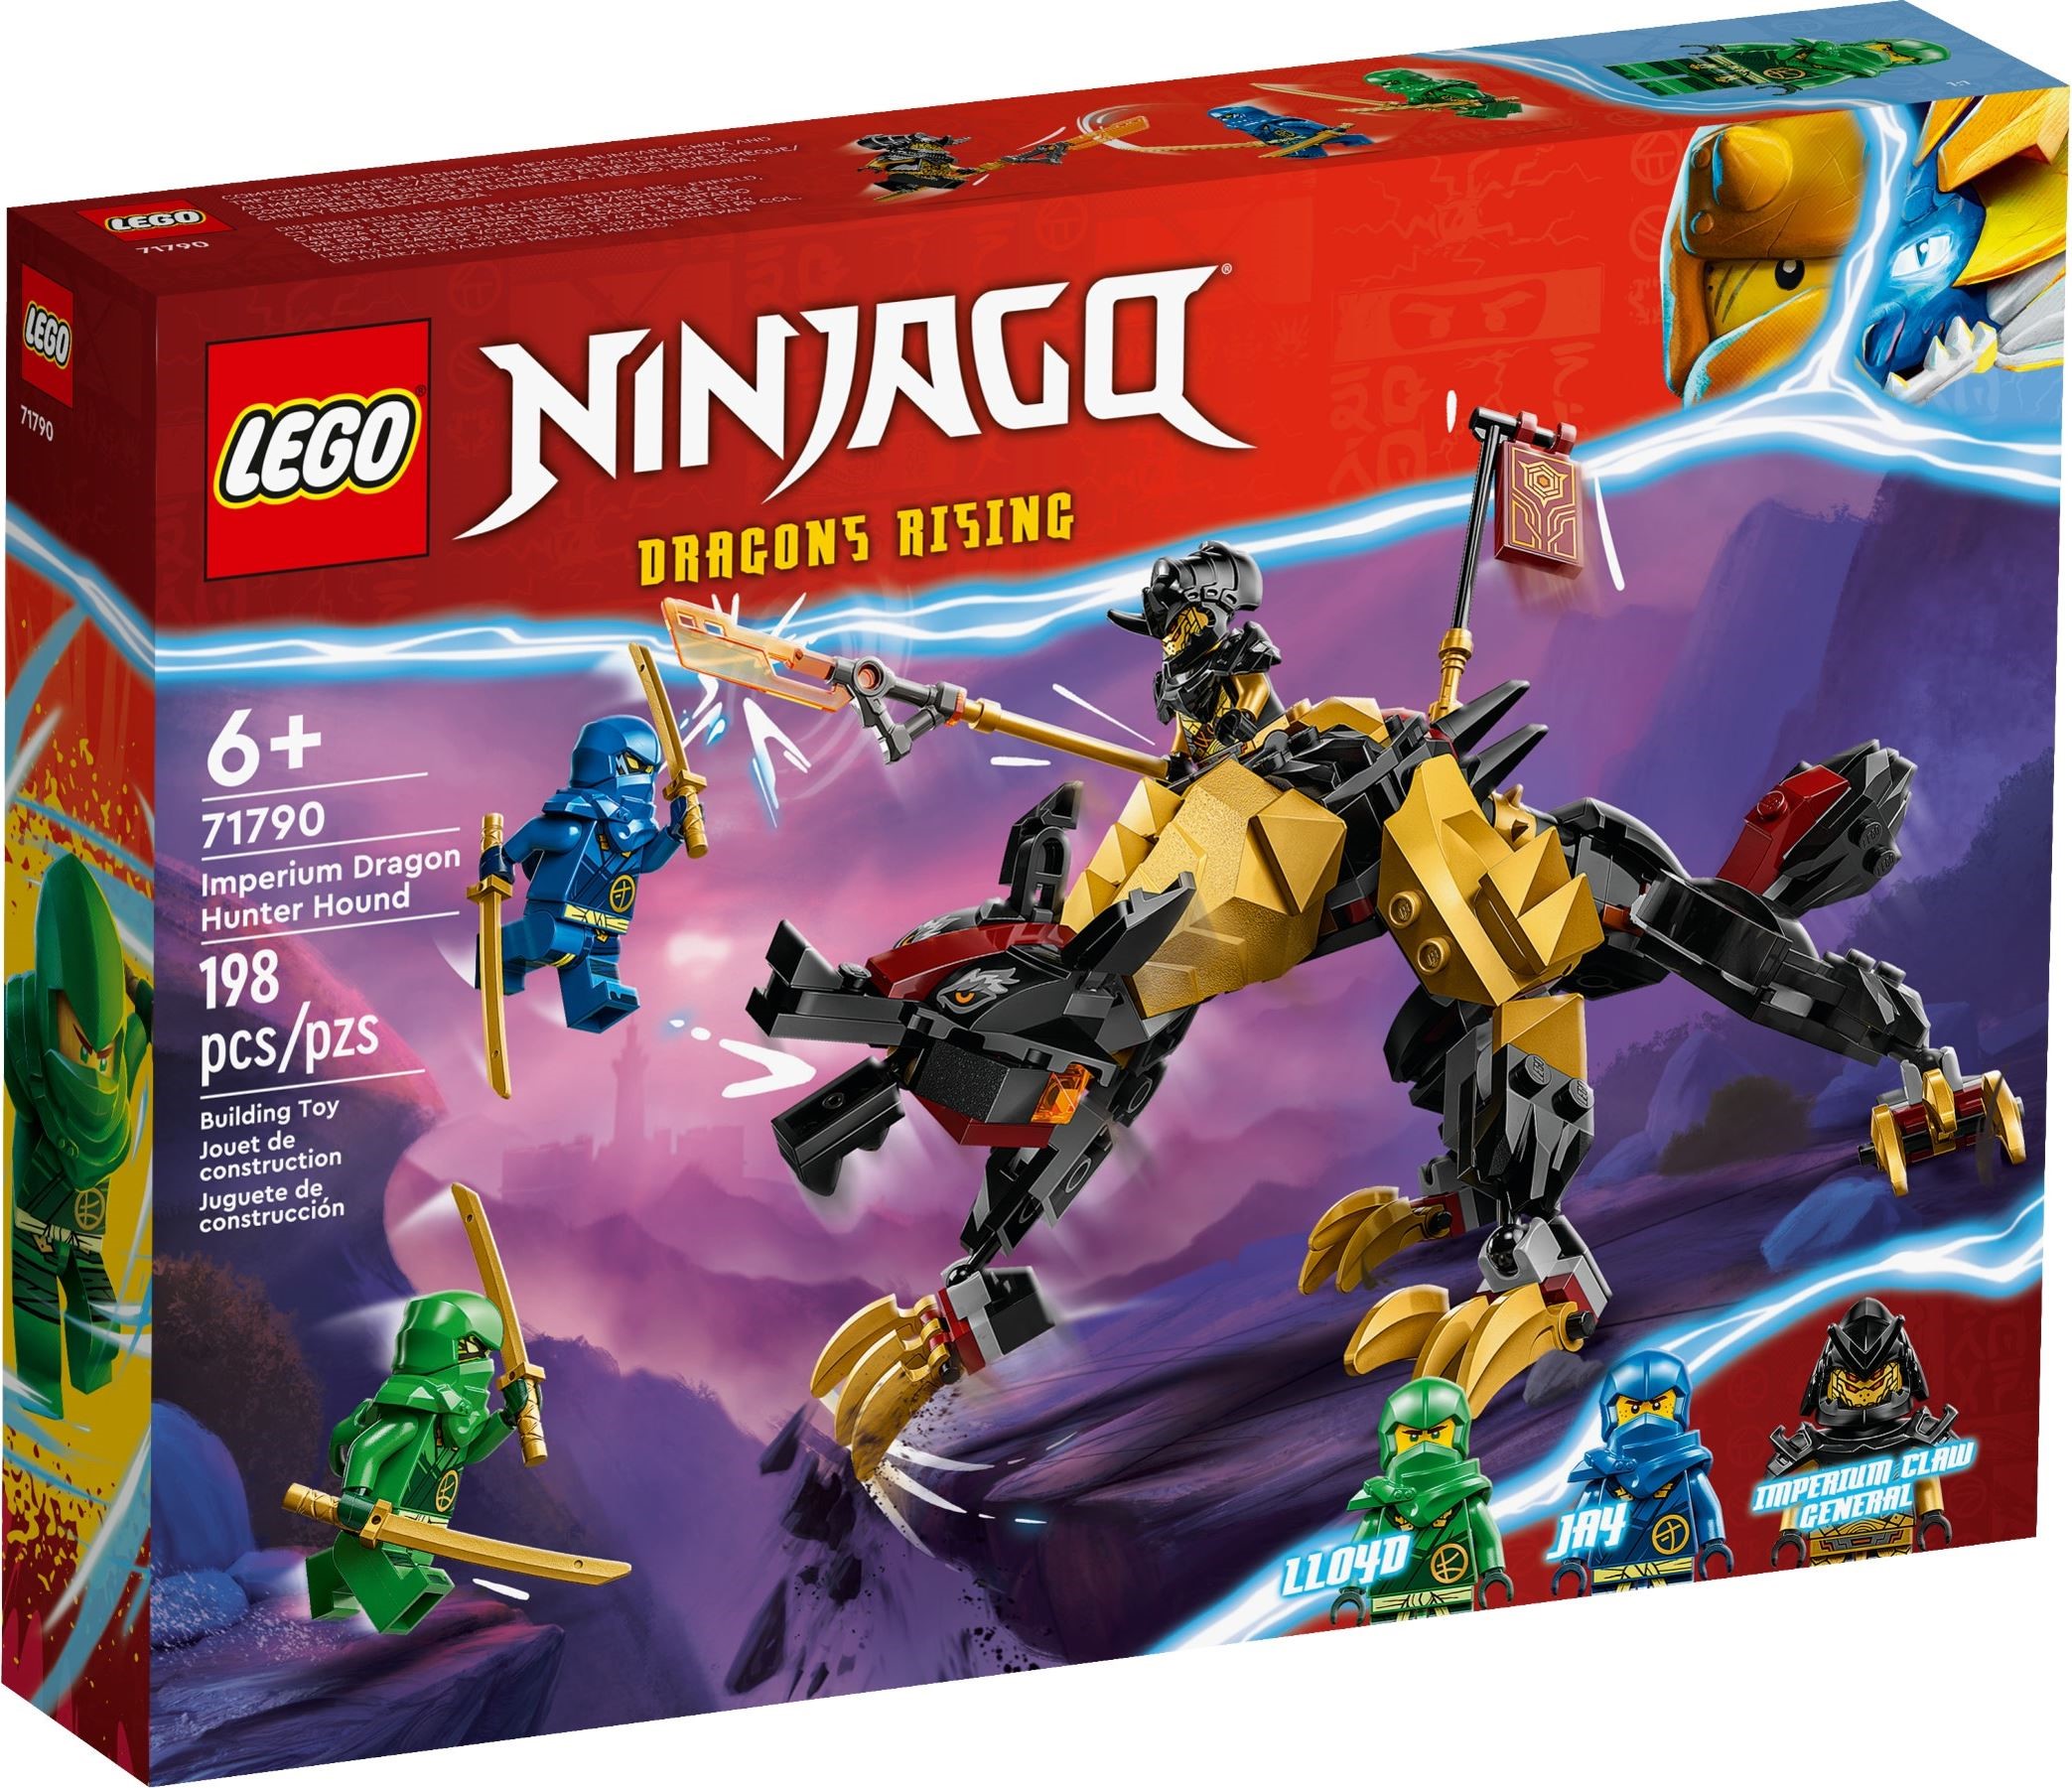 Figurine Lego® Ninjago Core - Le Chasseur Squelette